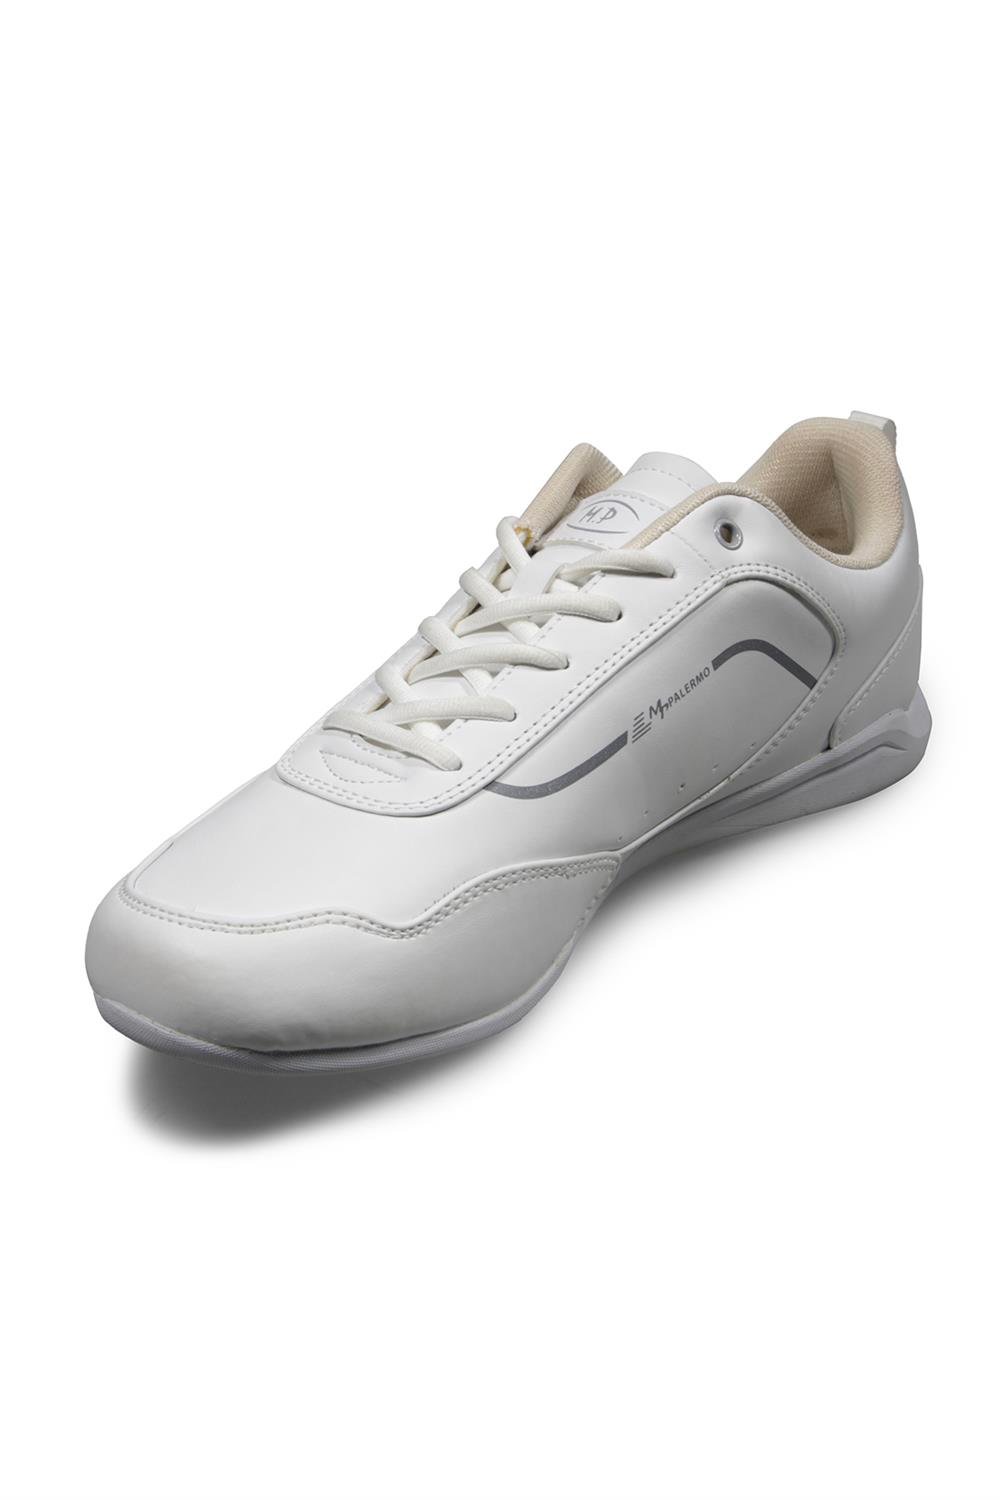 Erkek Beyaz Spor Ayakkabı Modelleri ve Fiyatları